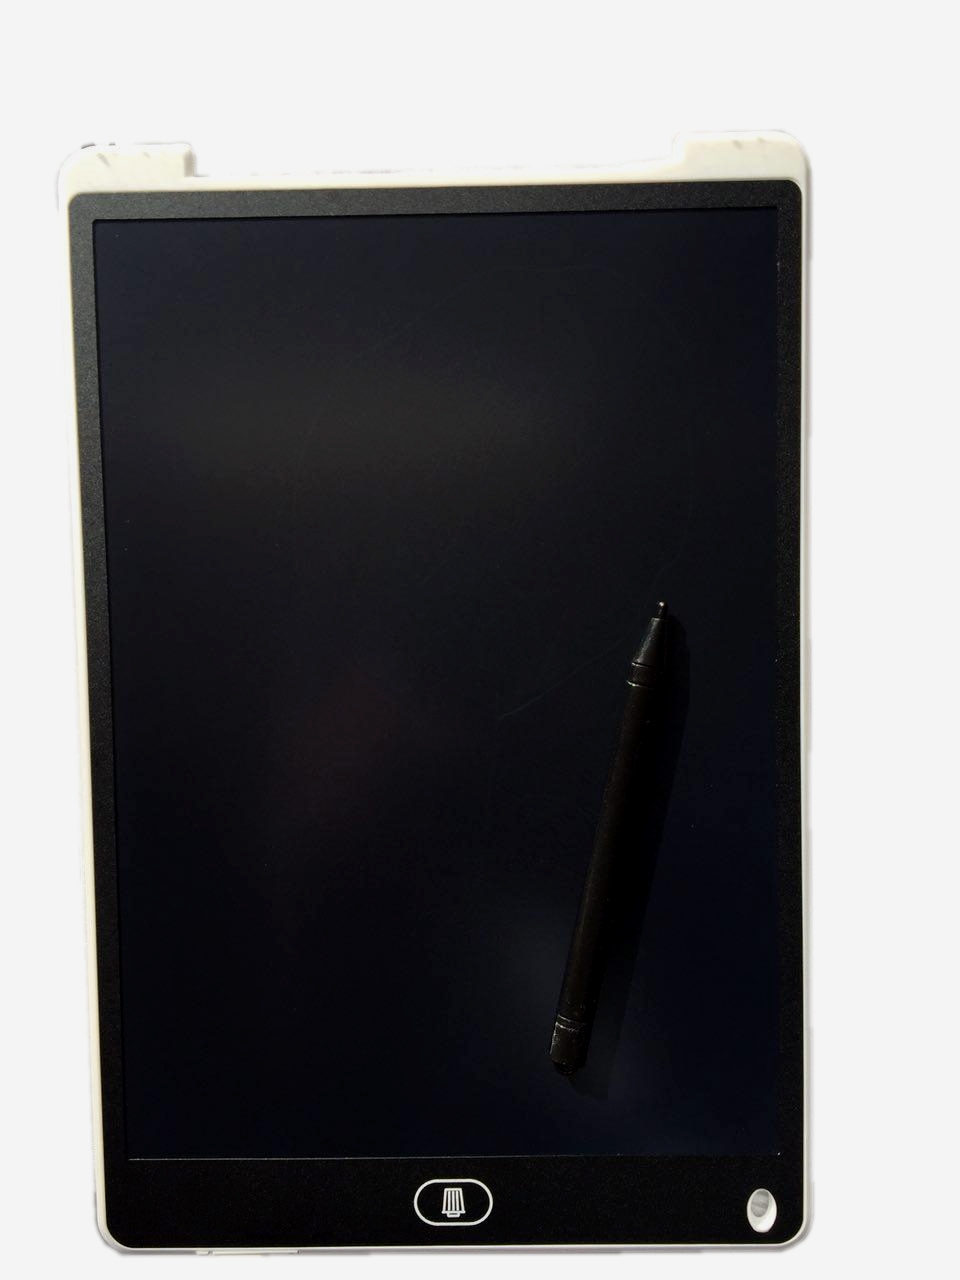 Графічний планшет LCD Writing Tablet 12 дюймів Планшет для малювання White (HbP050392)